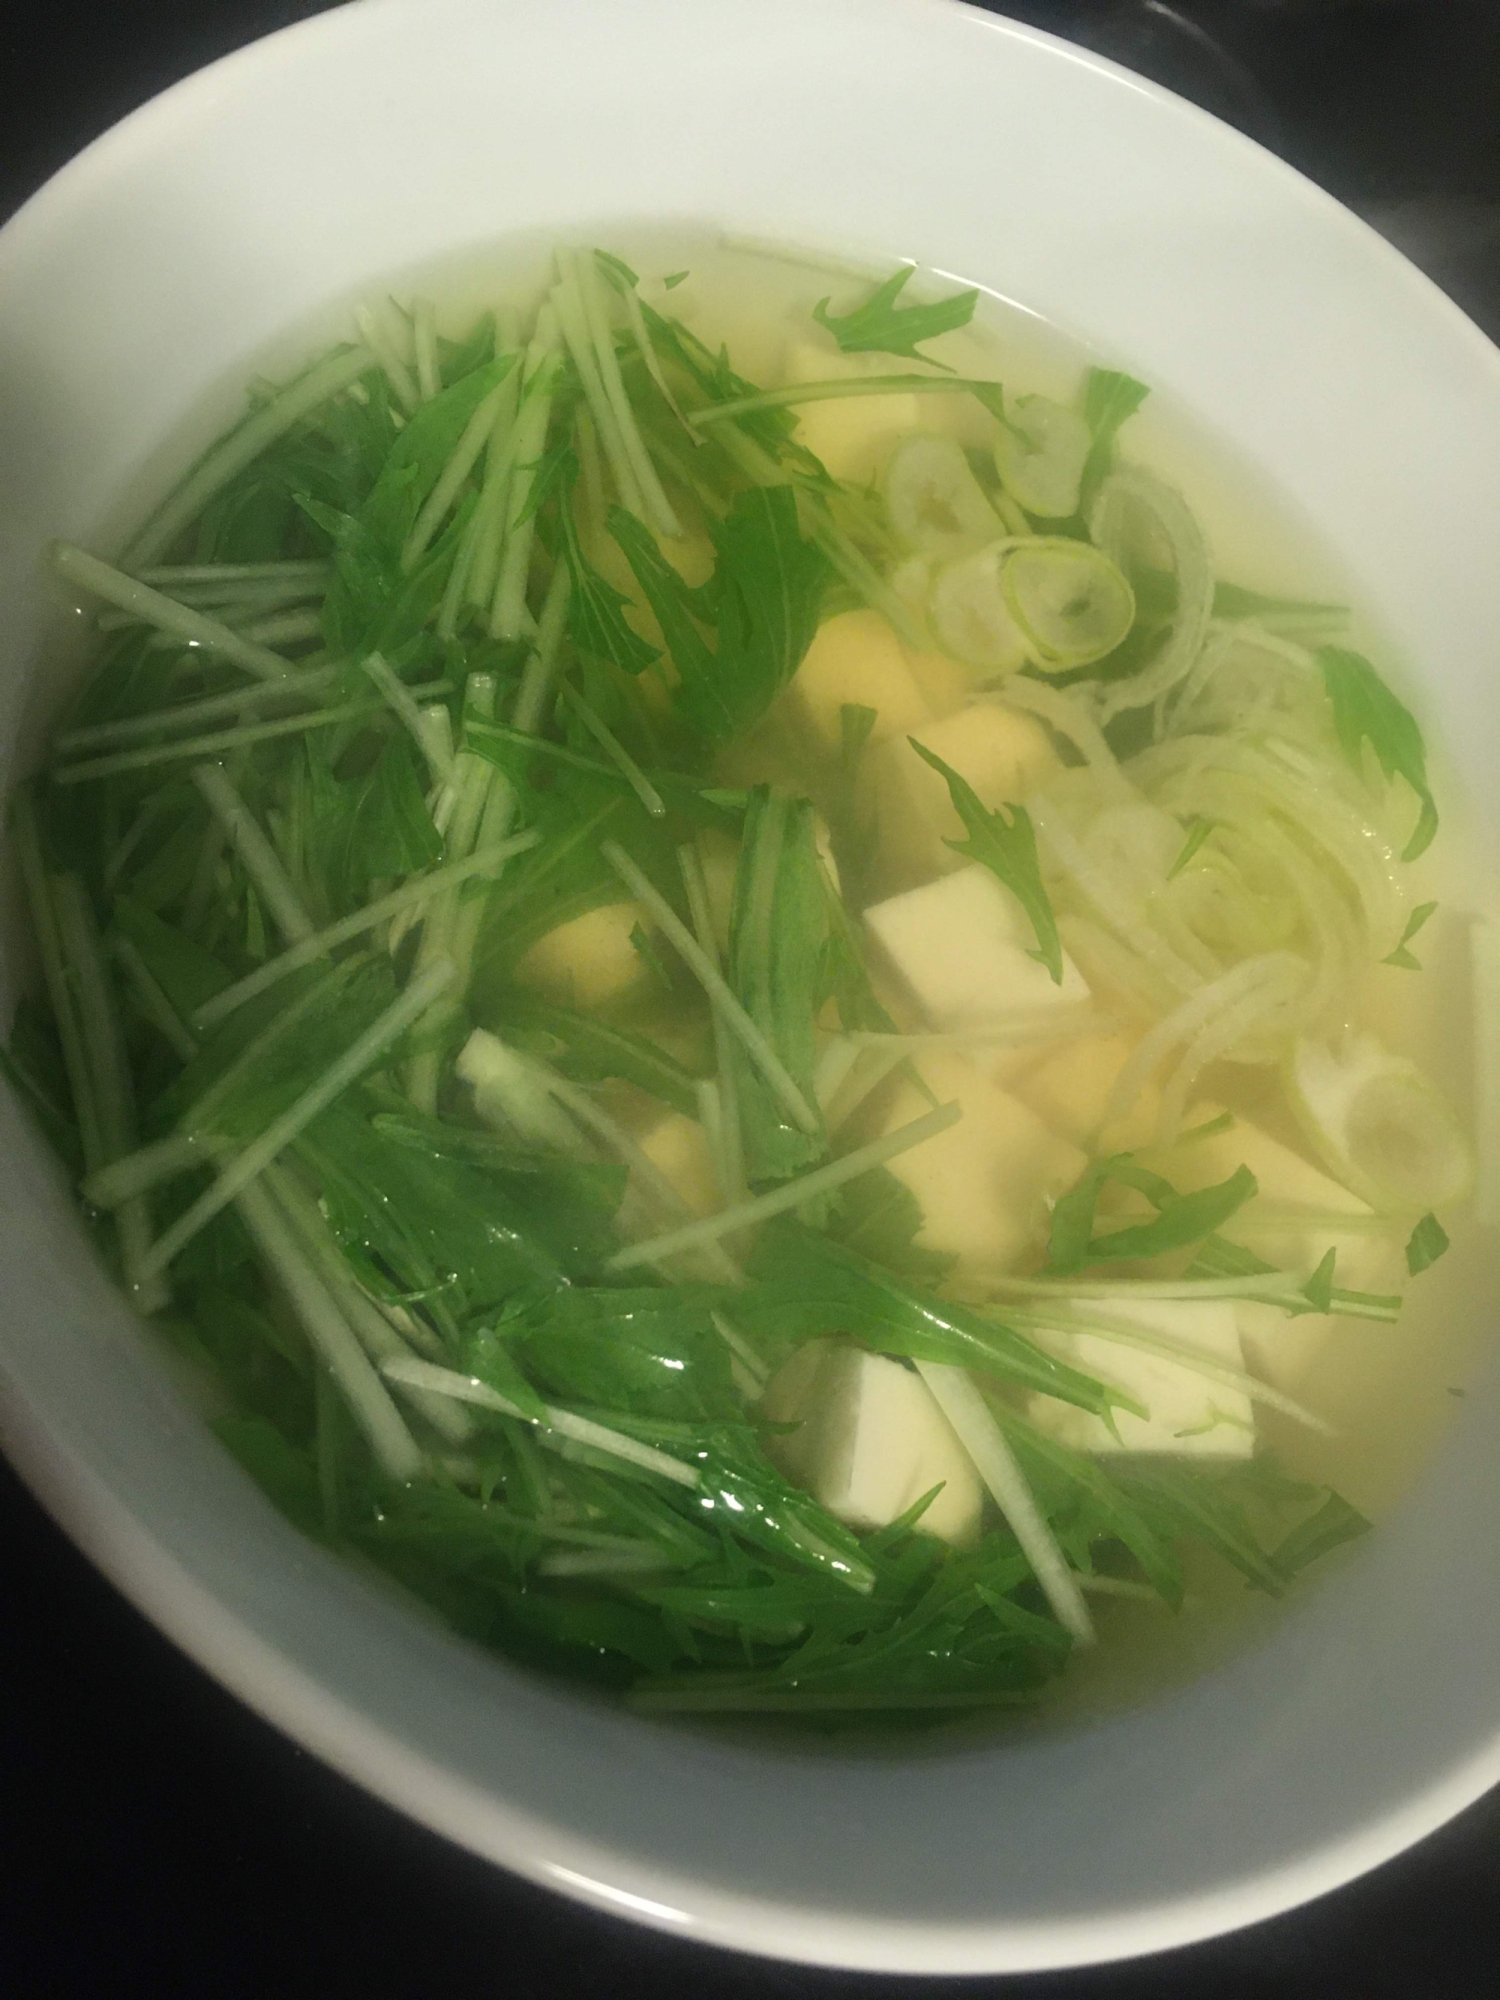 水菜と豆腐のコンソメスープ